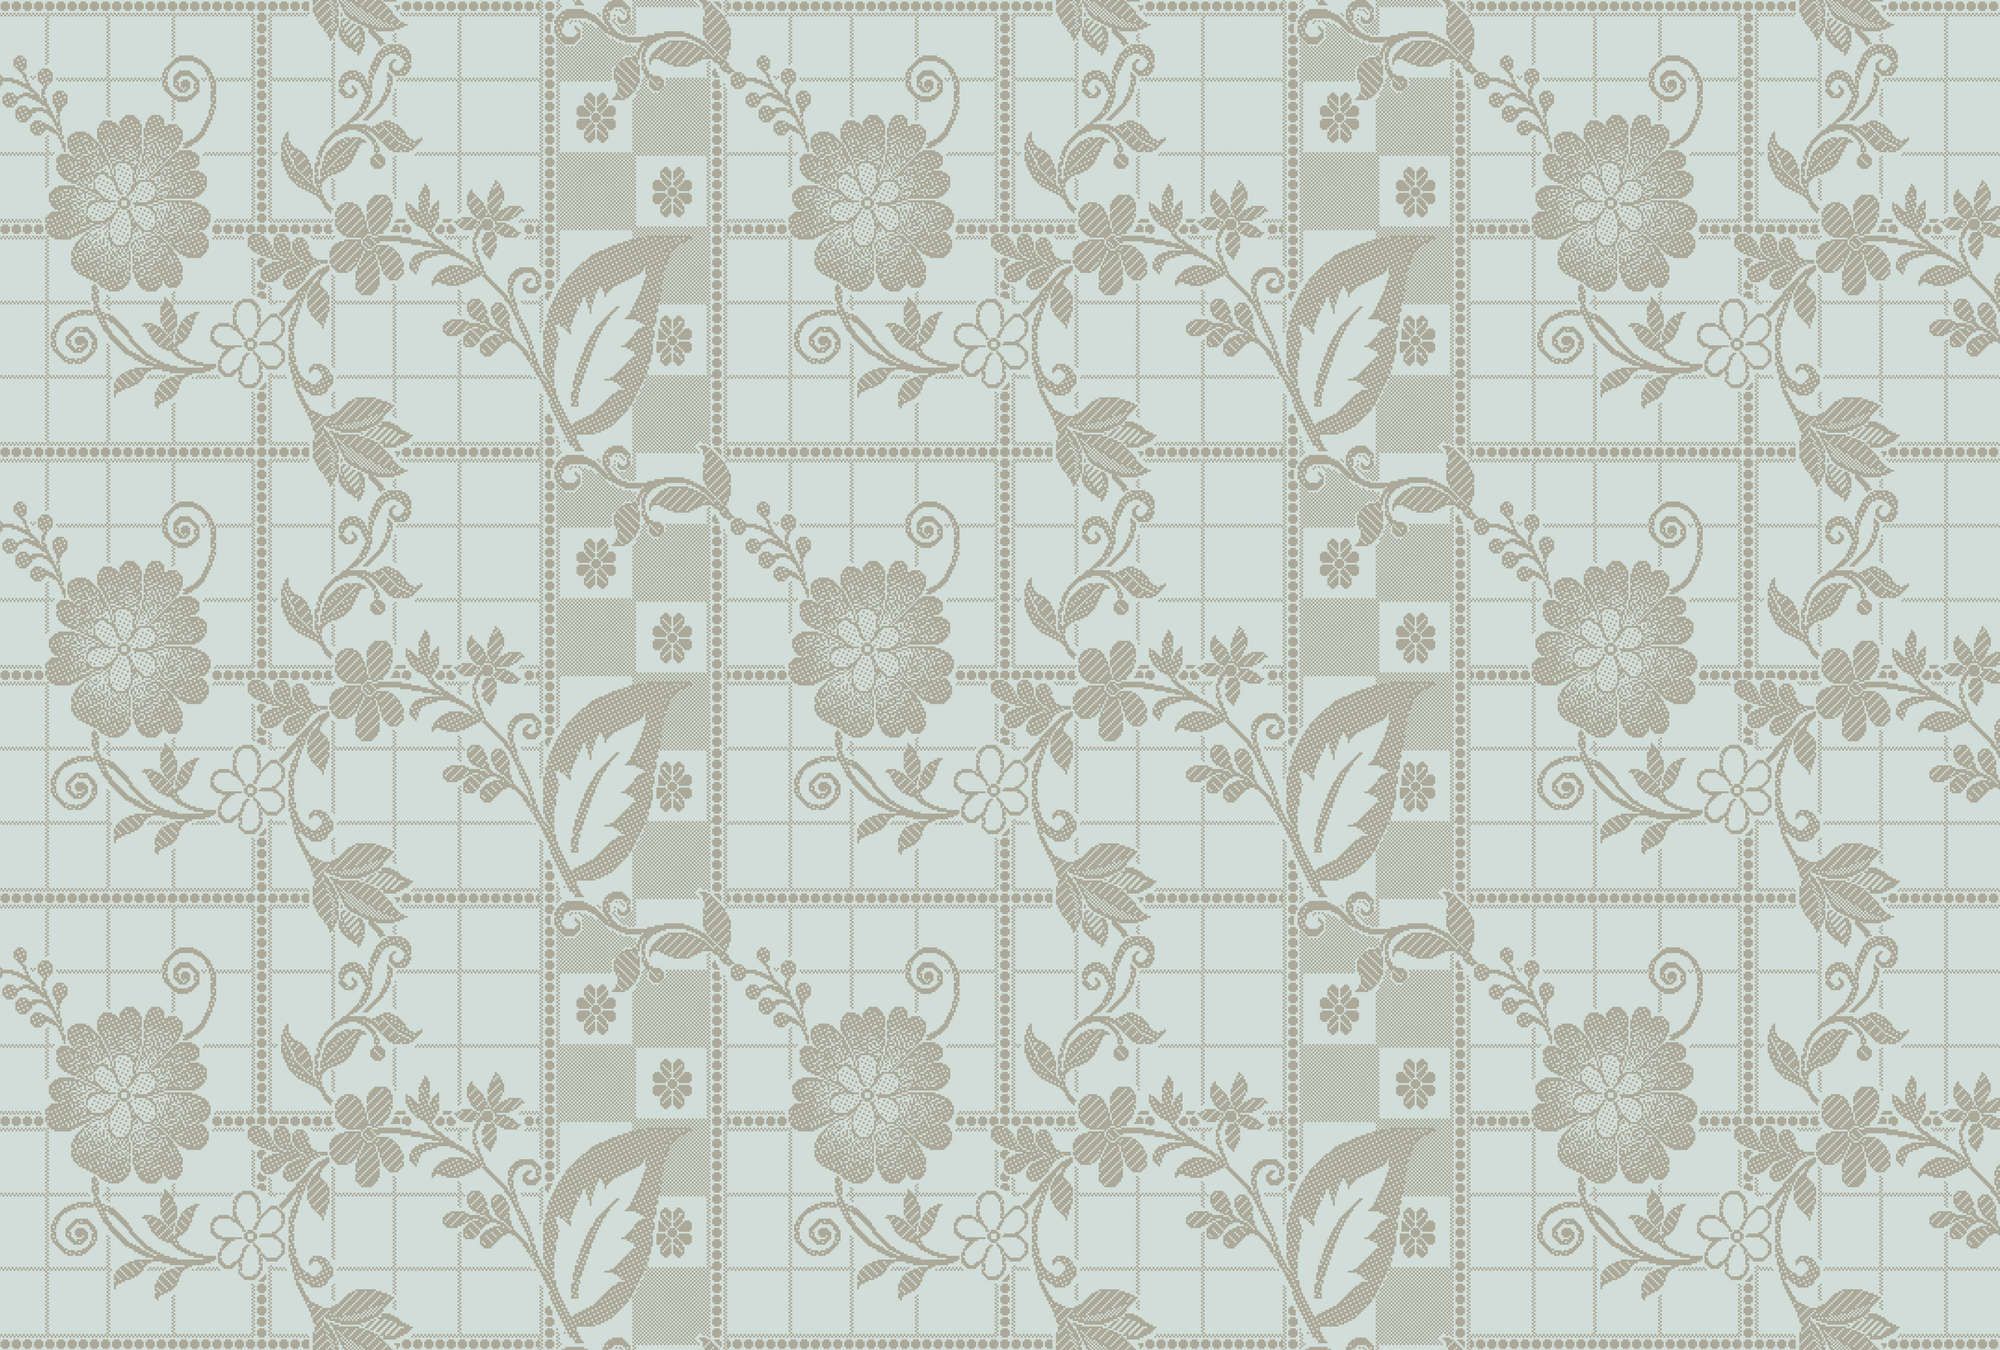             Fotomurali »valerie« - Piccoli quadrati a forma di pixel con fiori - Verde menta chiaro | Materiali non tessuto liscio e leggermente perlescente
        